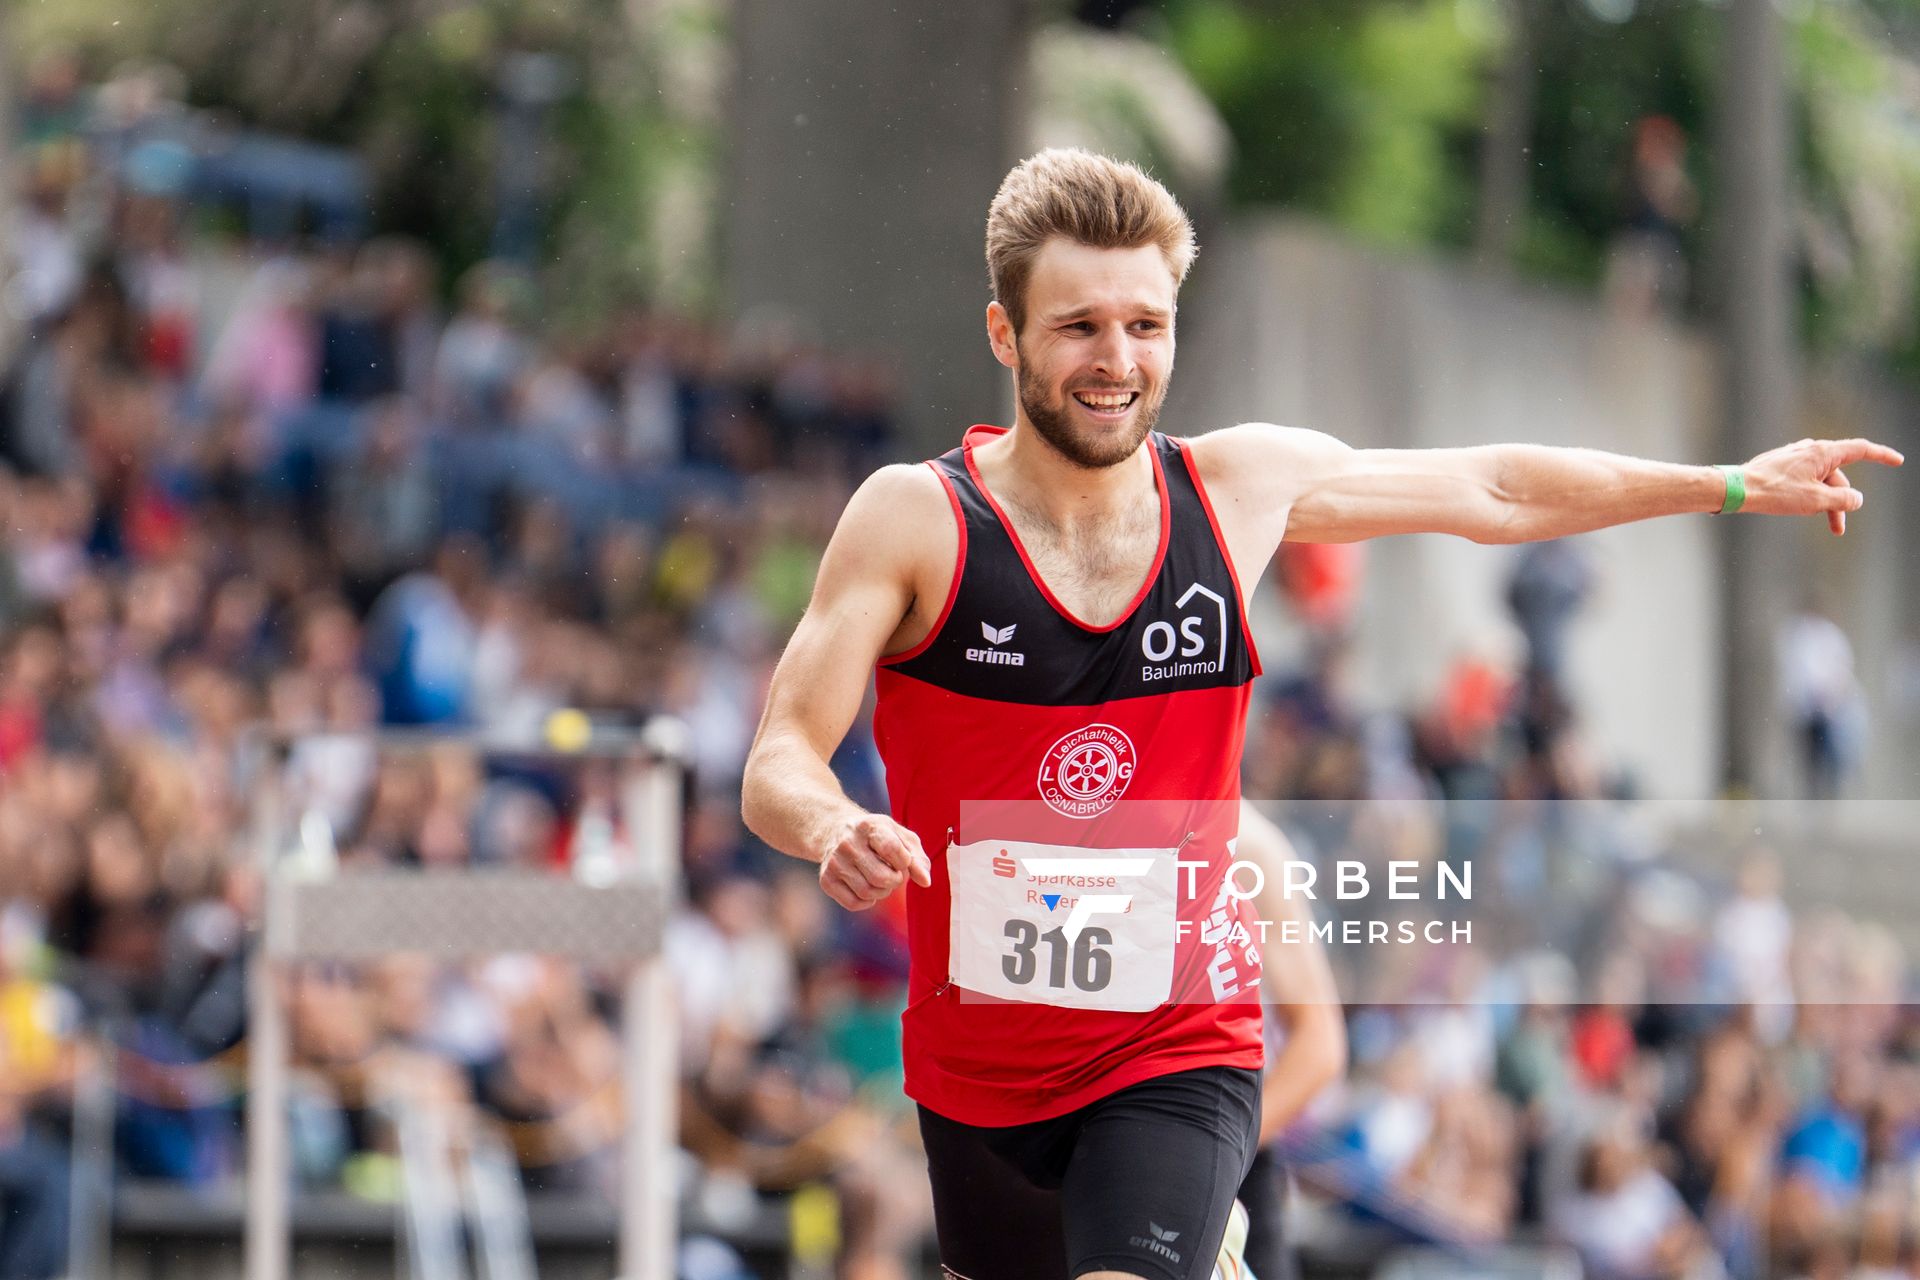 Fabian Dammermann (LG Osnabrueck) ueber 400m am 04.06.2022 waehrend der Sparkassen Gala in Regensburg